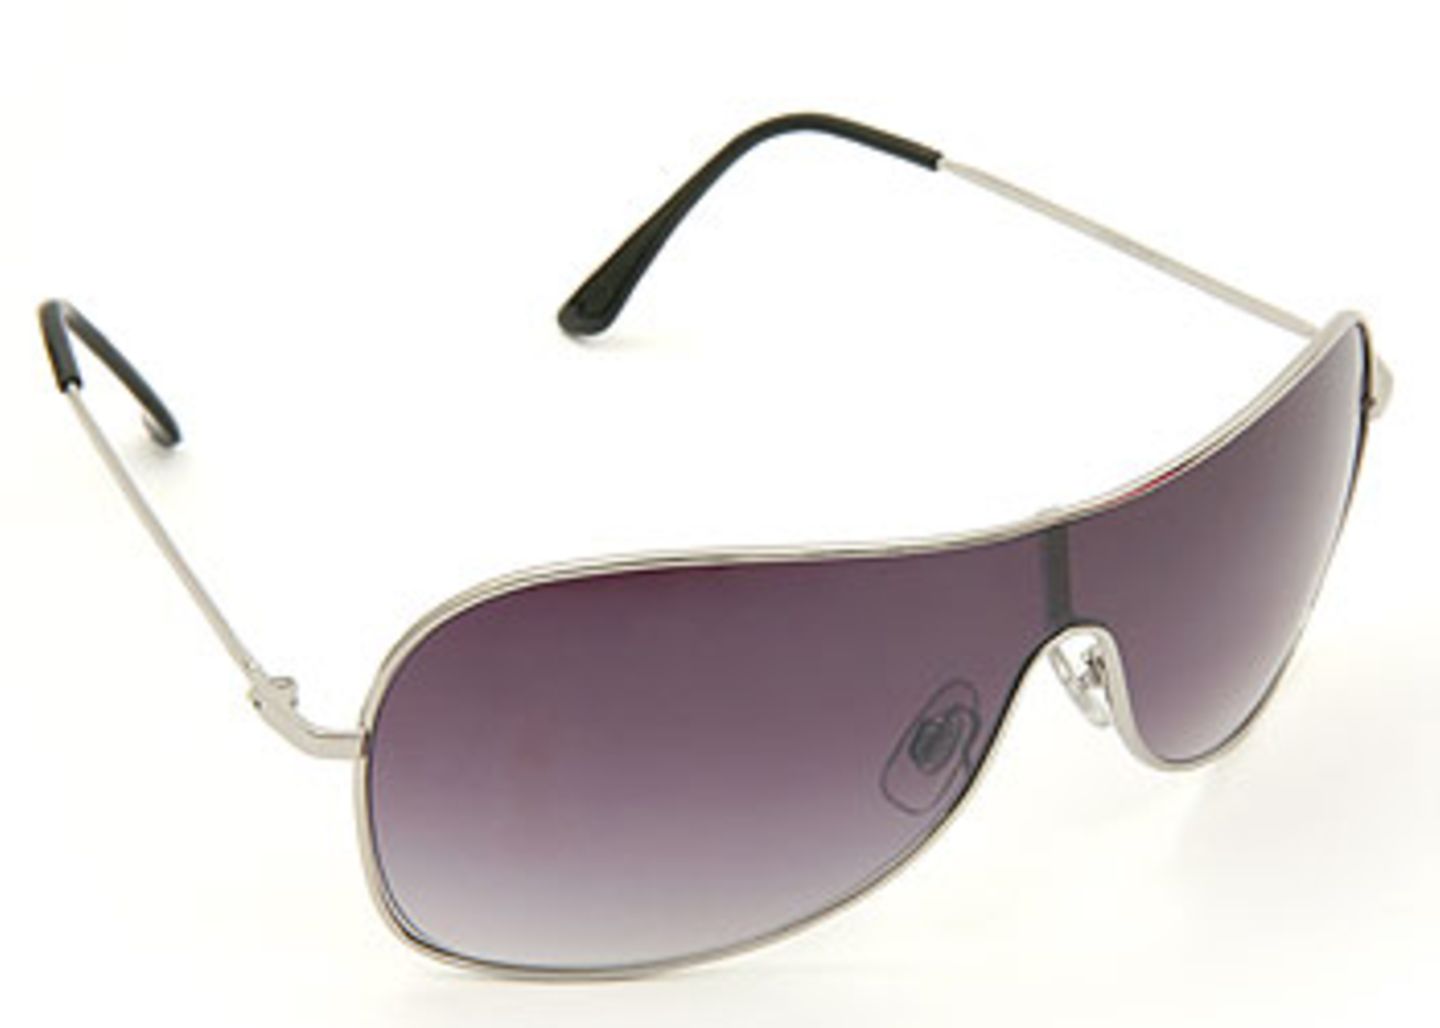 Pilotenbrille mit Metallfassung und grauen Gläsern; 7,95 Euro; von New Yorker